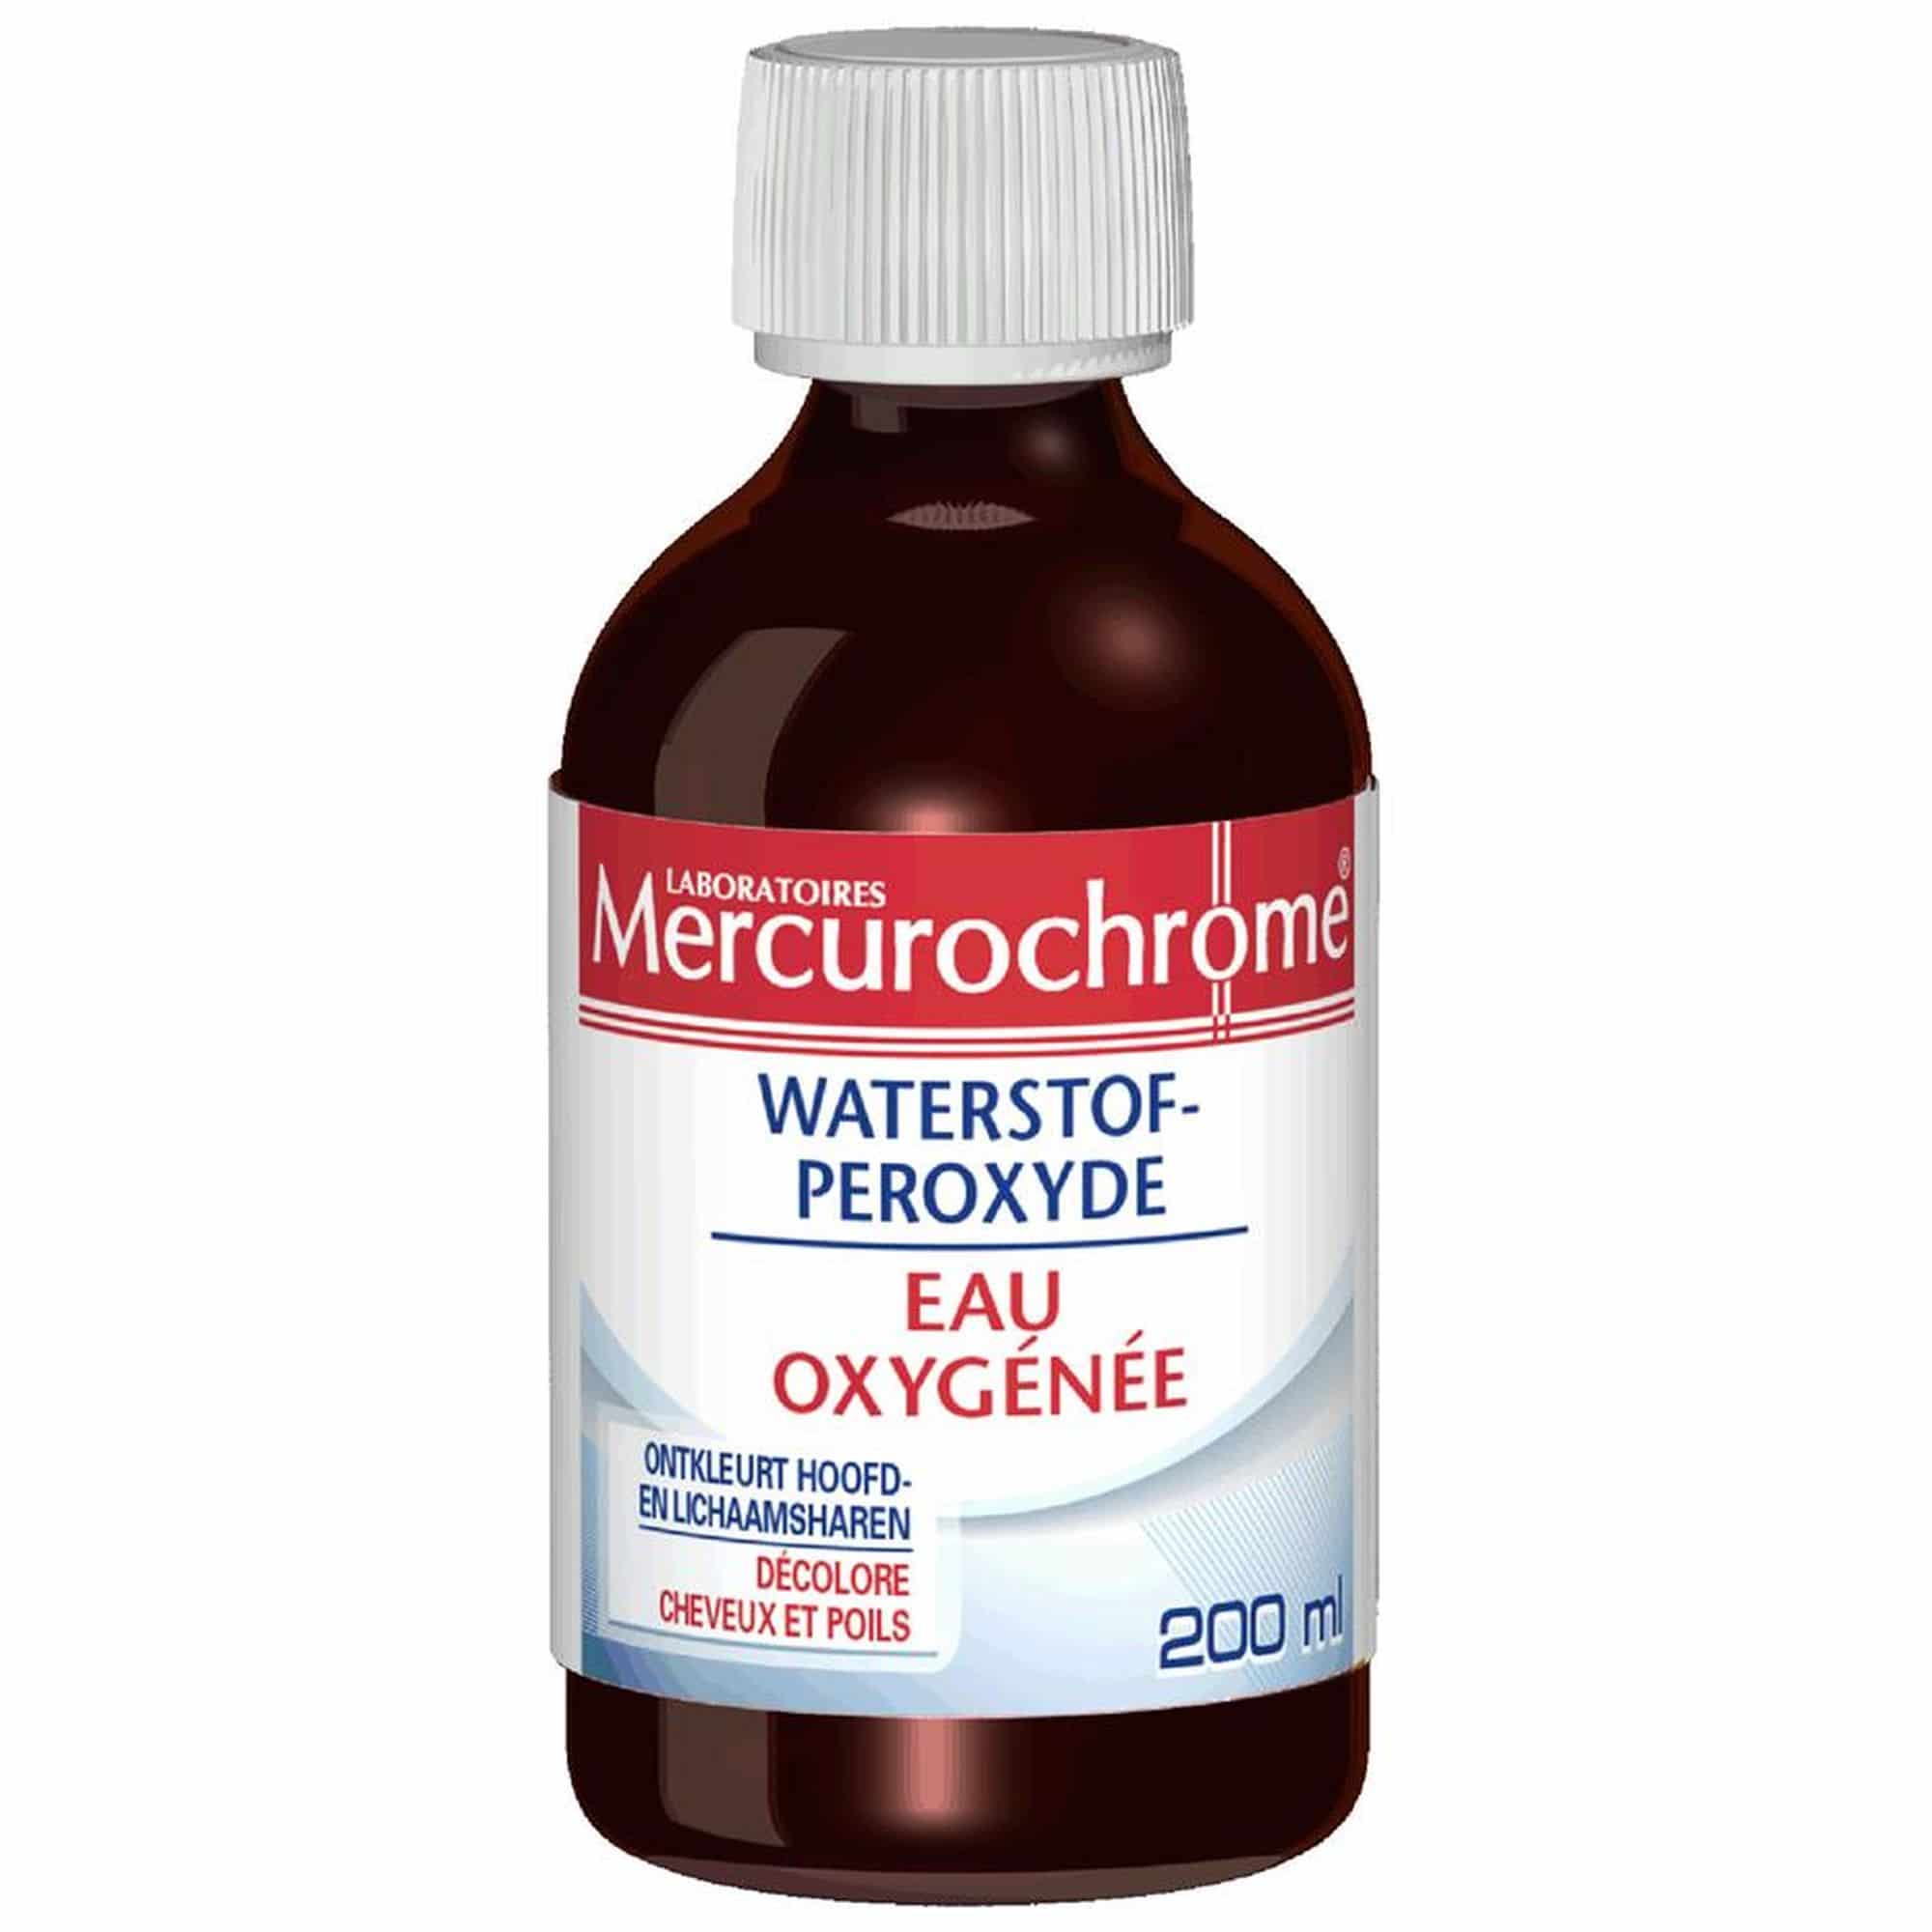 Mercurochrome Waterstof-Peroxyde